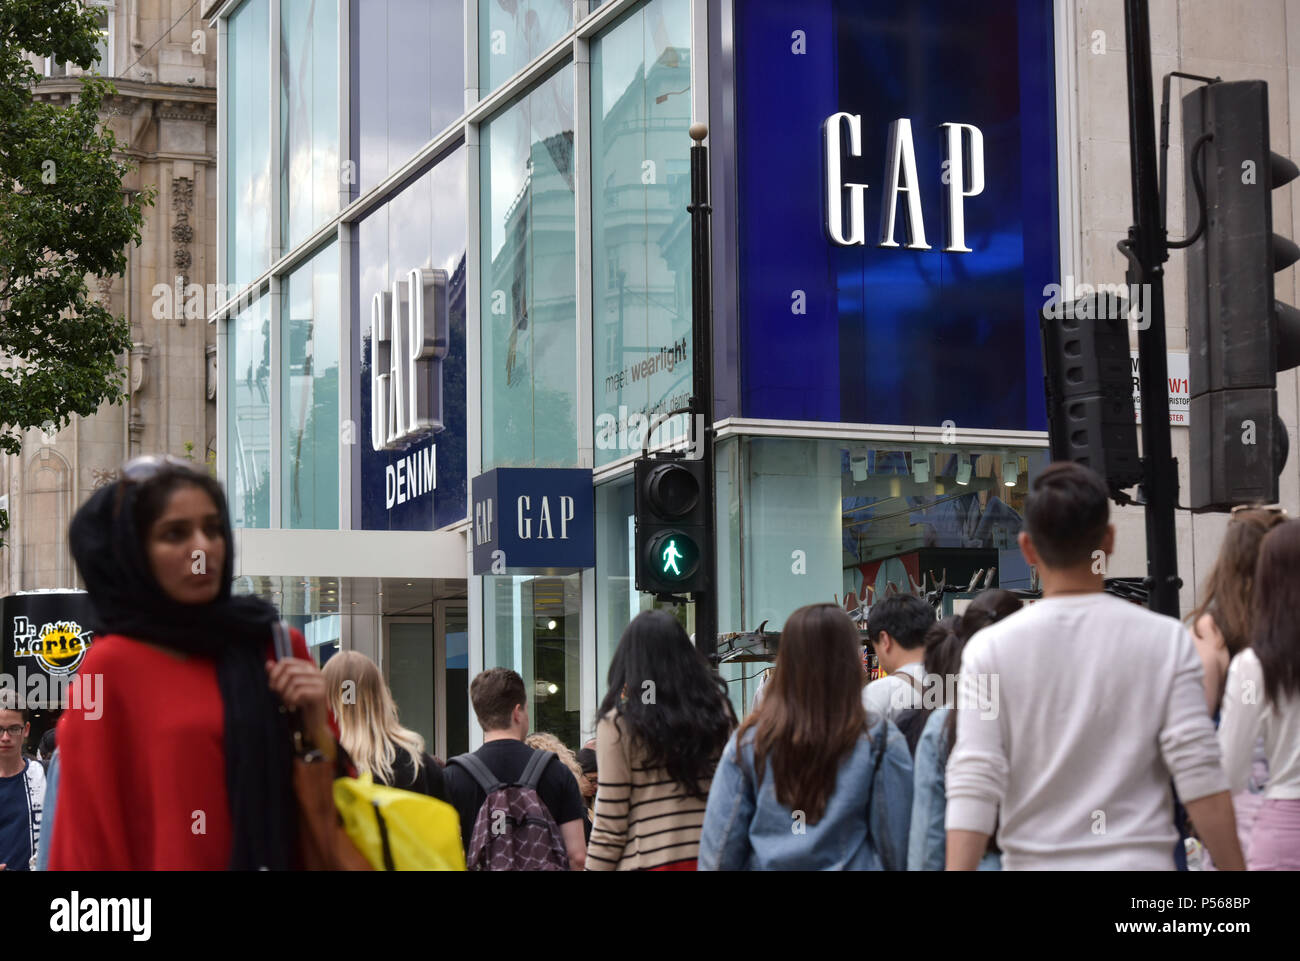 Les consommateurs, les touristes et les employés de bureau passent devant l'écart phare magasin sur Oxford Street au centre de Londres Banque D'Images